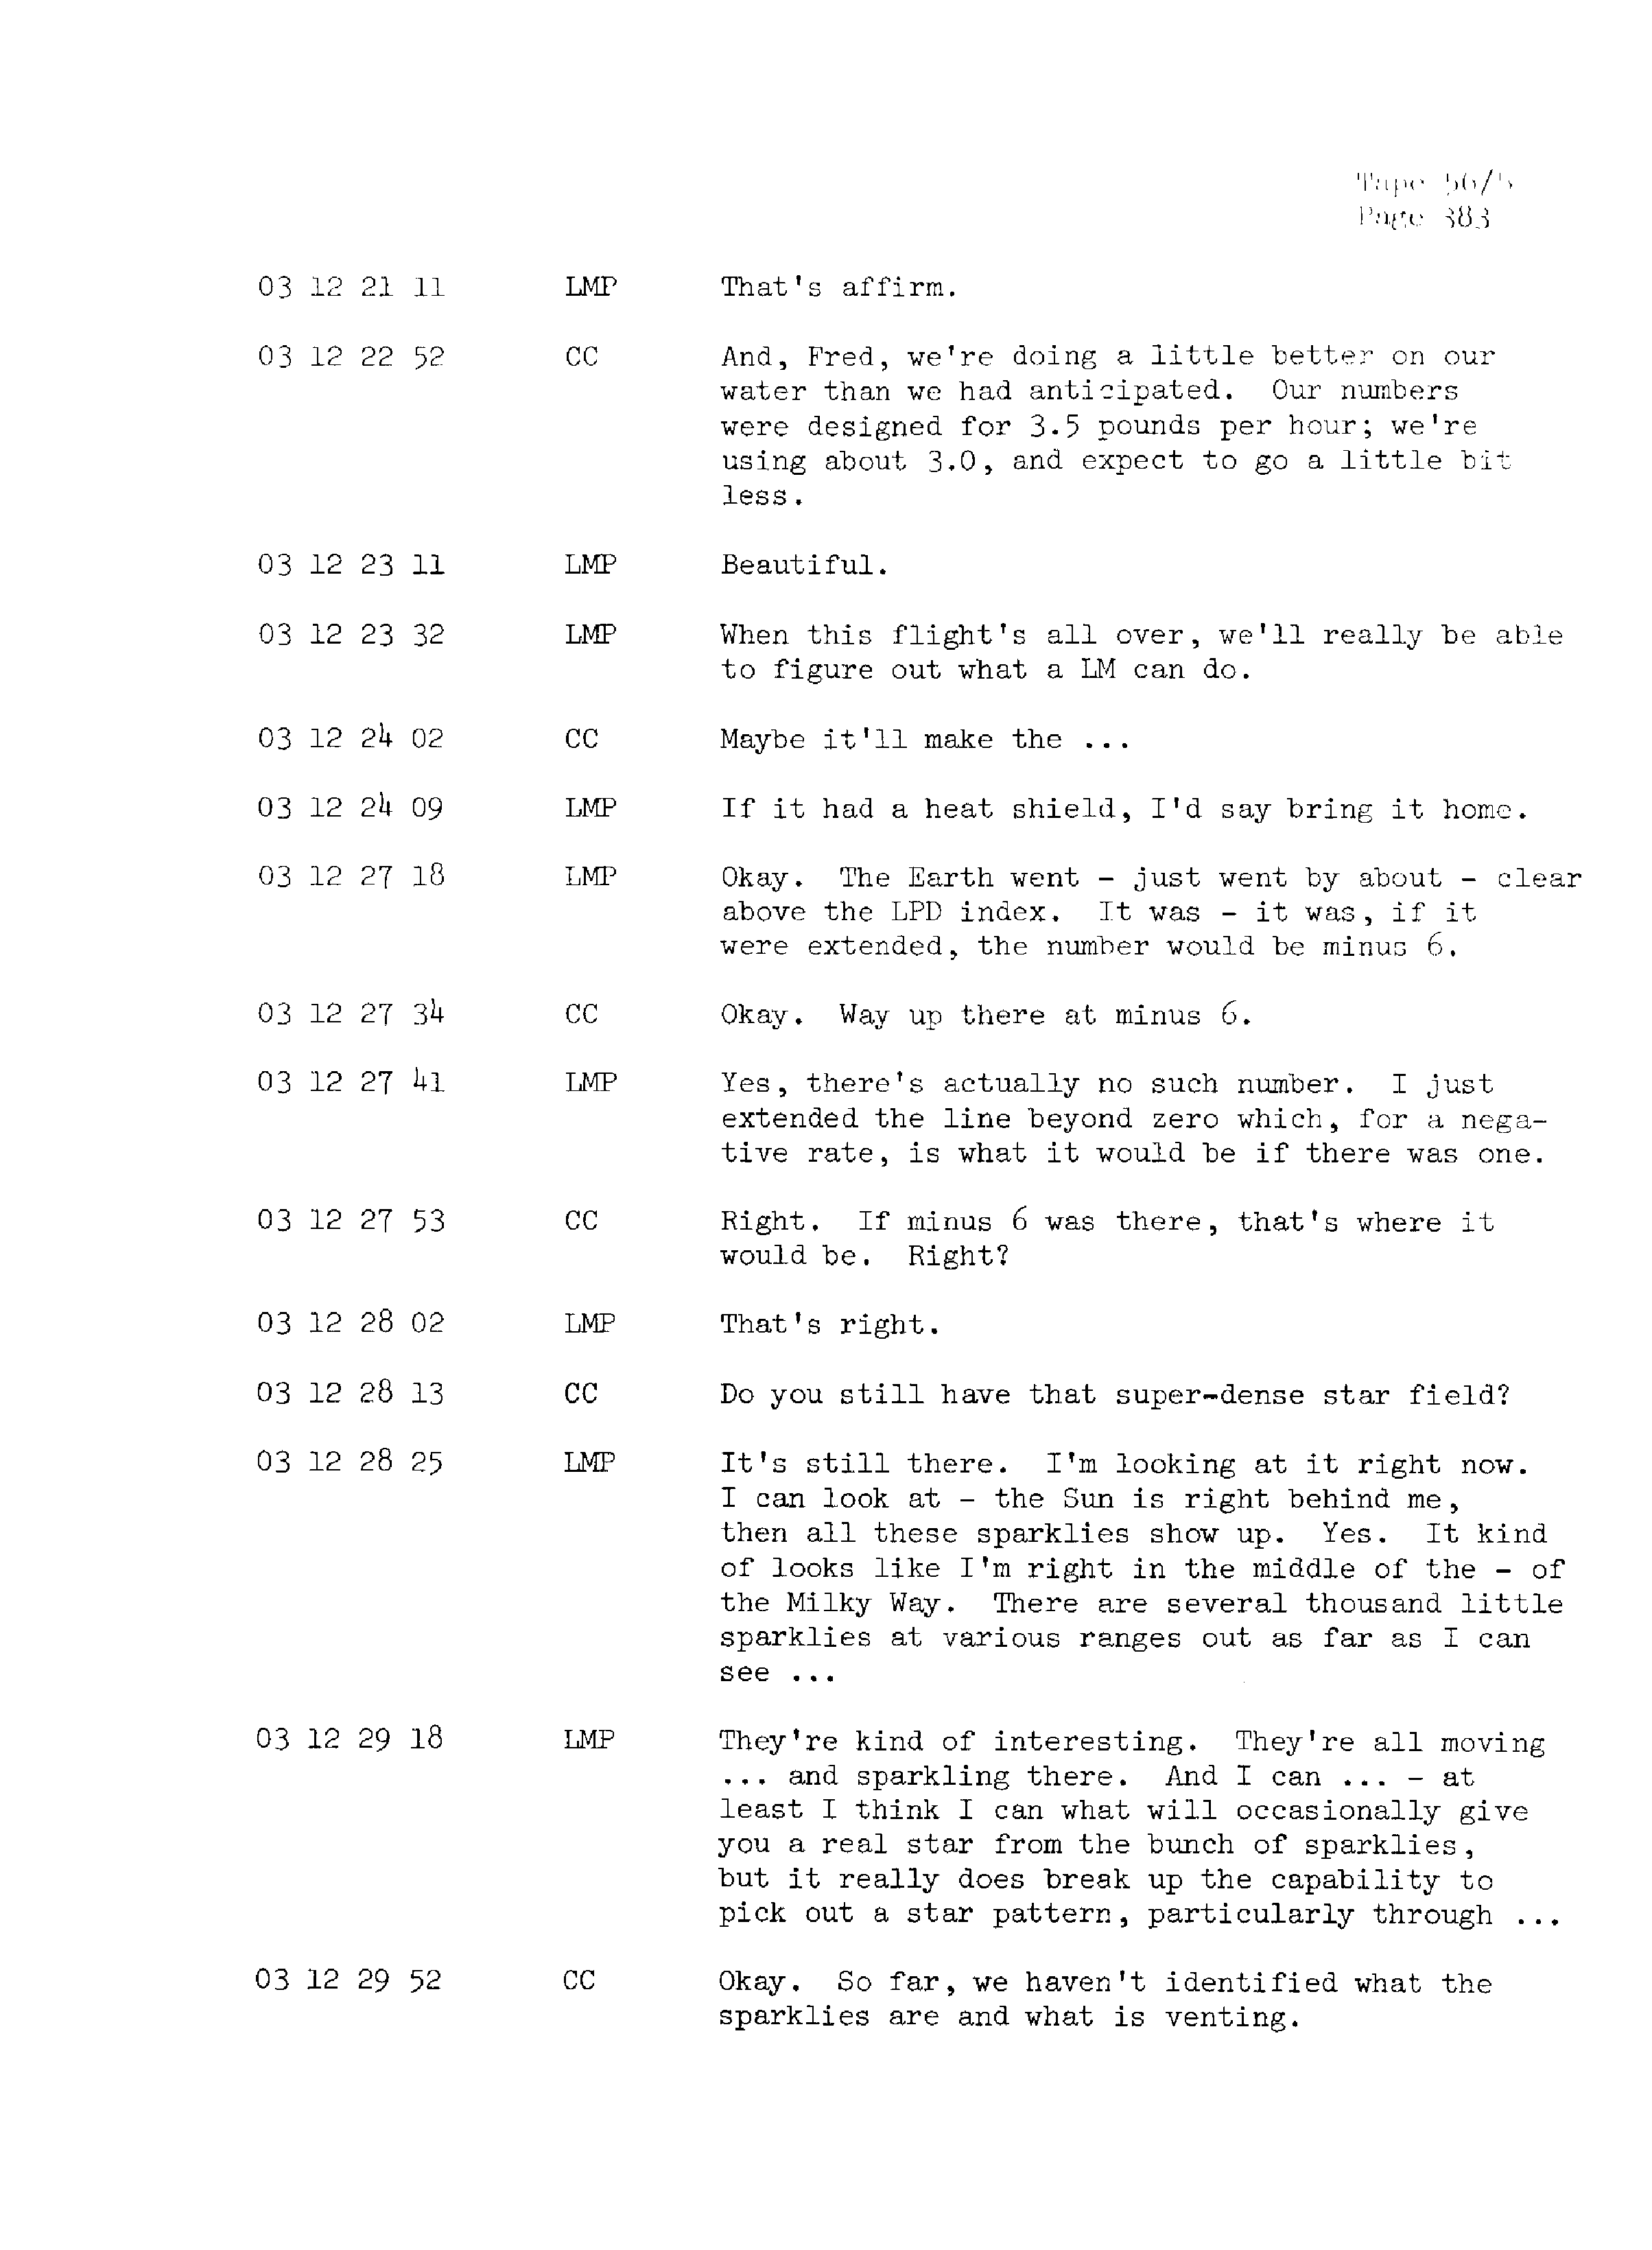 Page 390 of Apollo 13’s original transcript